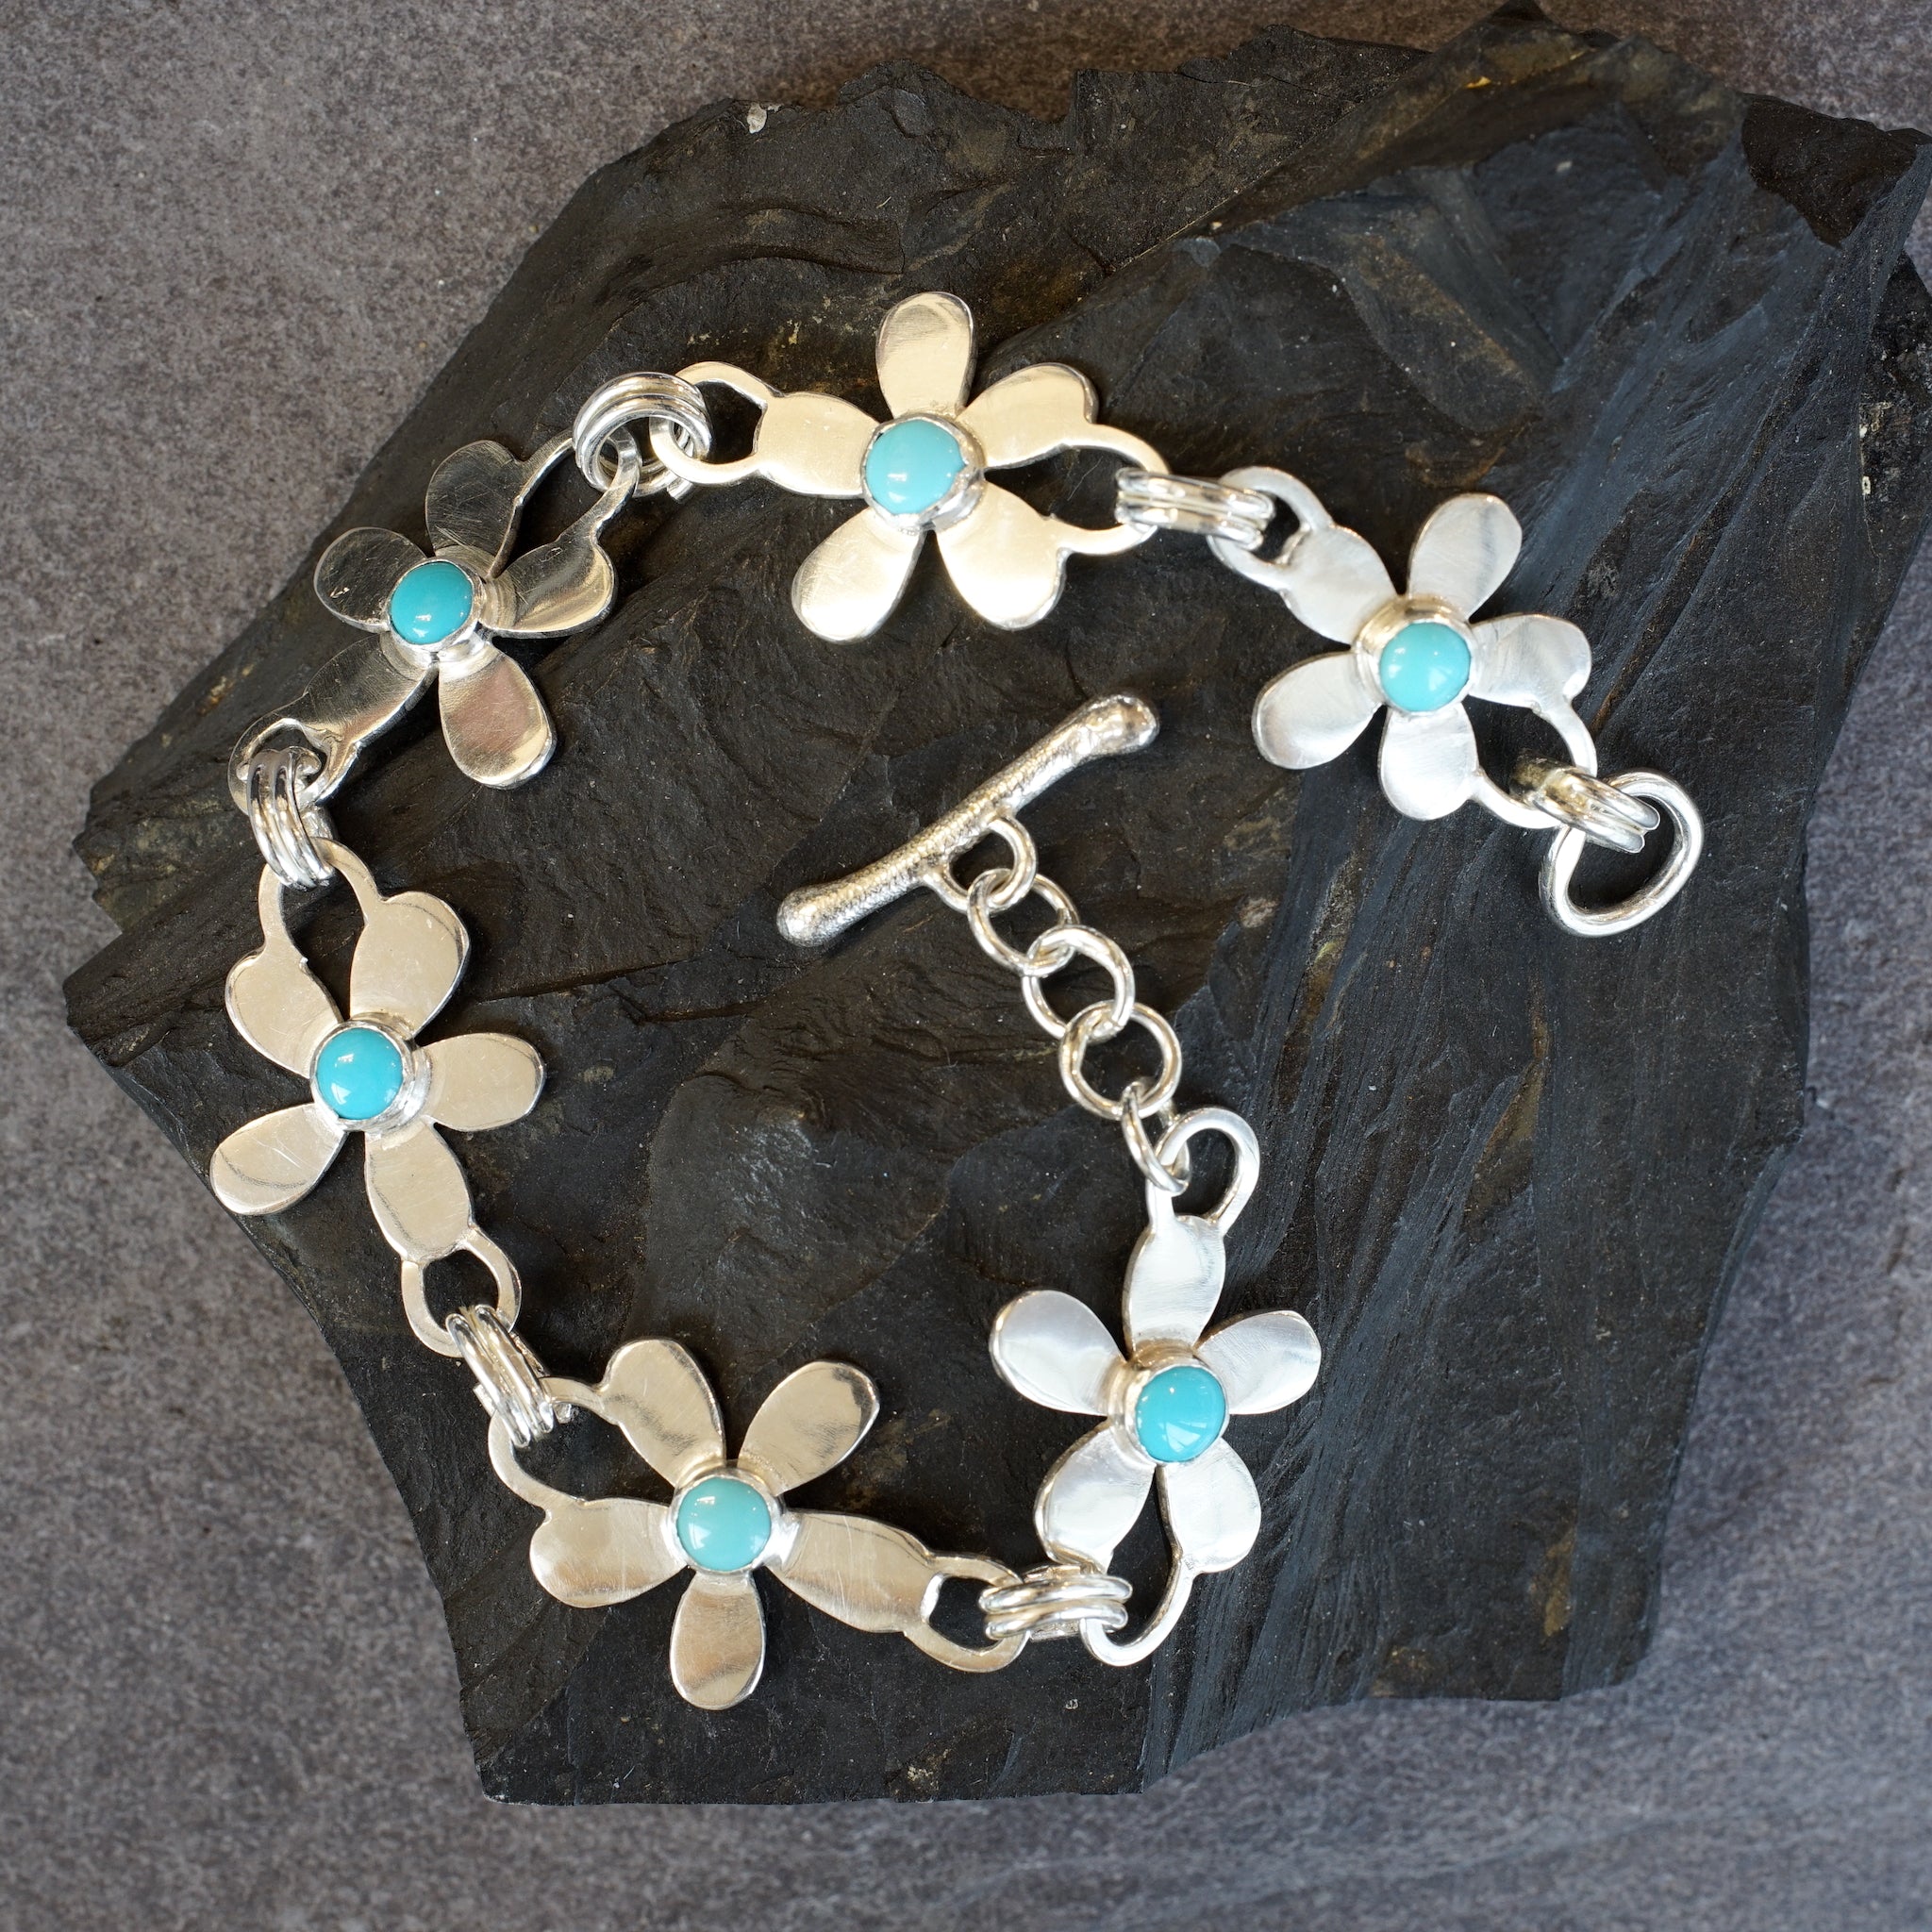 Daisy Chain Sterling silver & turquoise bracelet from Angela Kelly Jewellery Enniskillen Fermanagh